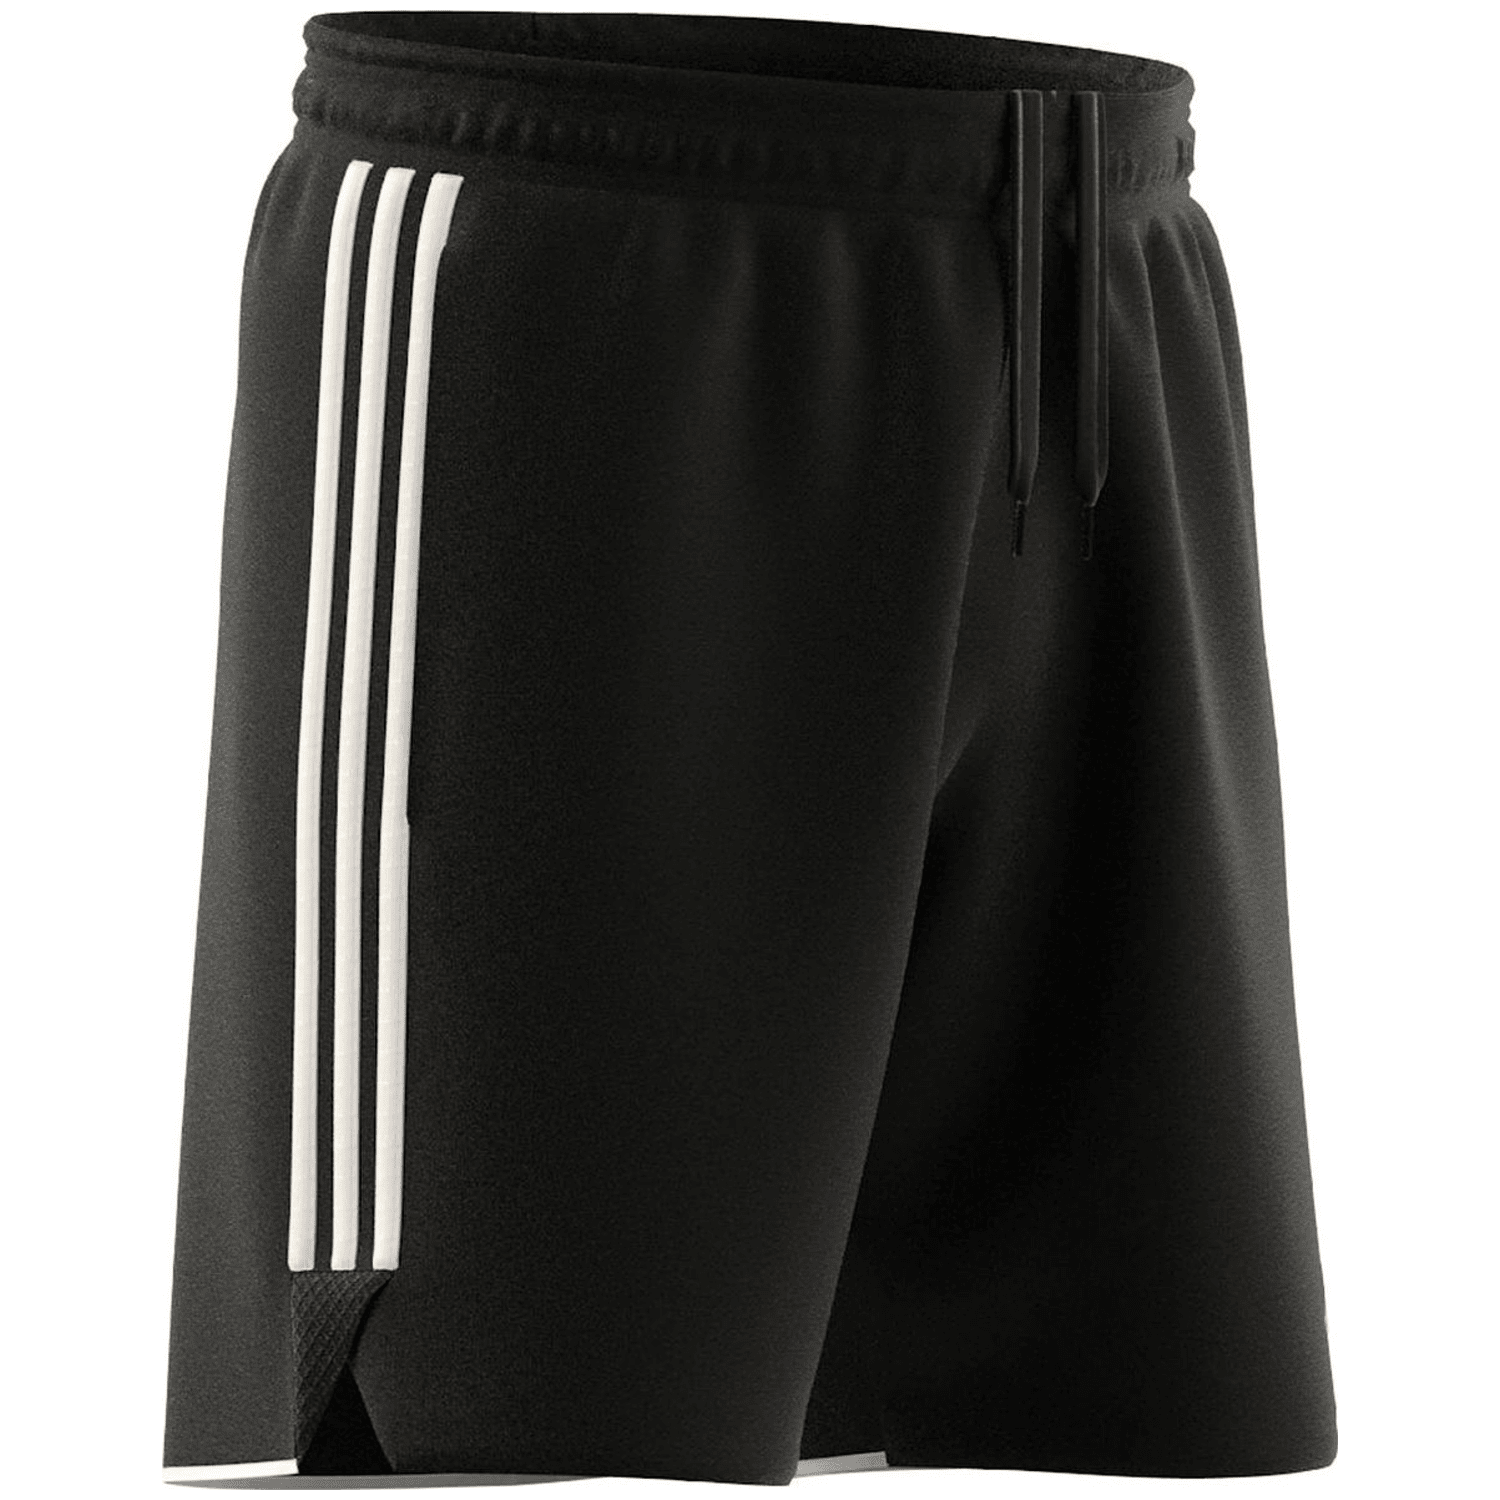 Adidas Tiro 23 League Sweat Shorts Herren